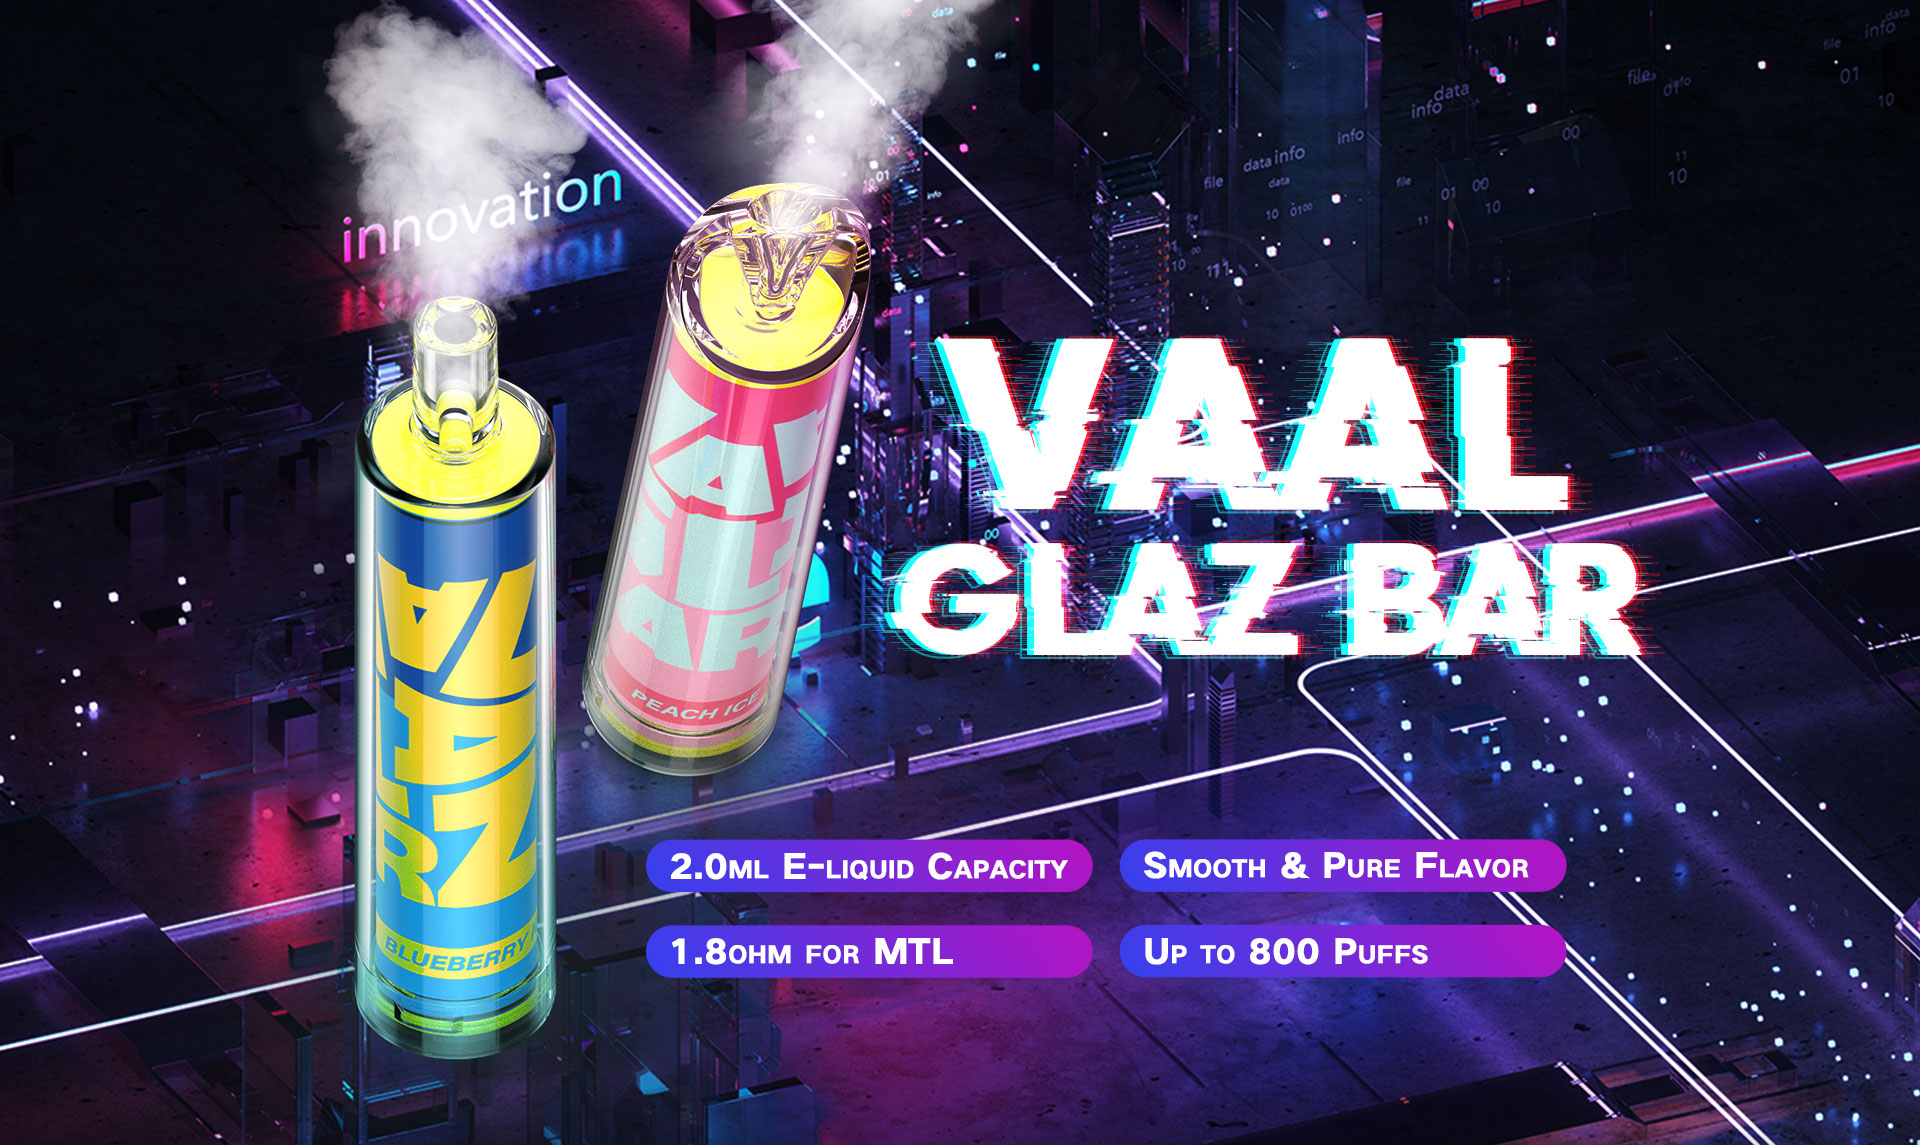 VAAL Glaz propose un vaporisateur jetable, petit appareil compact, rechargeable qui a été préchargé et rempli d'un délicieux jus.